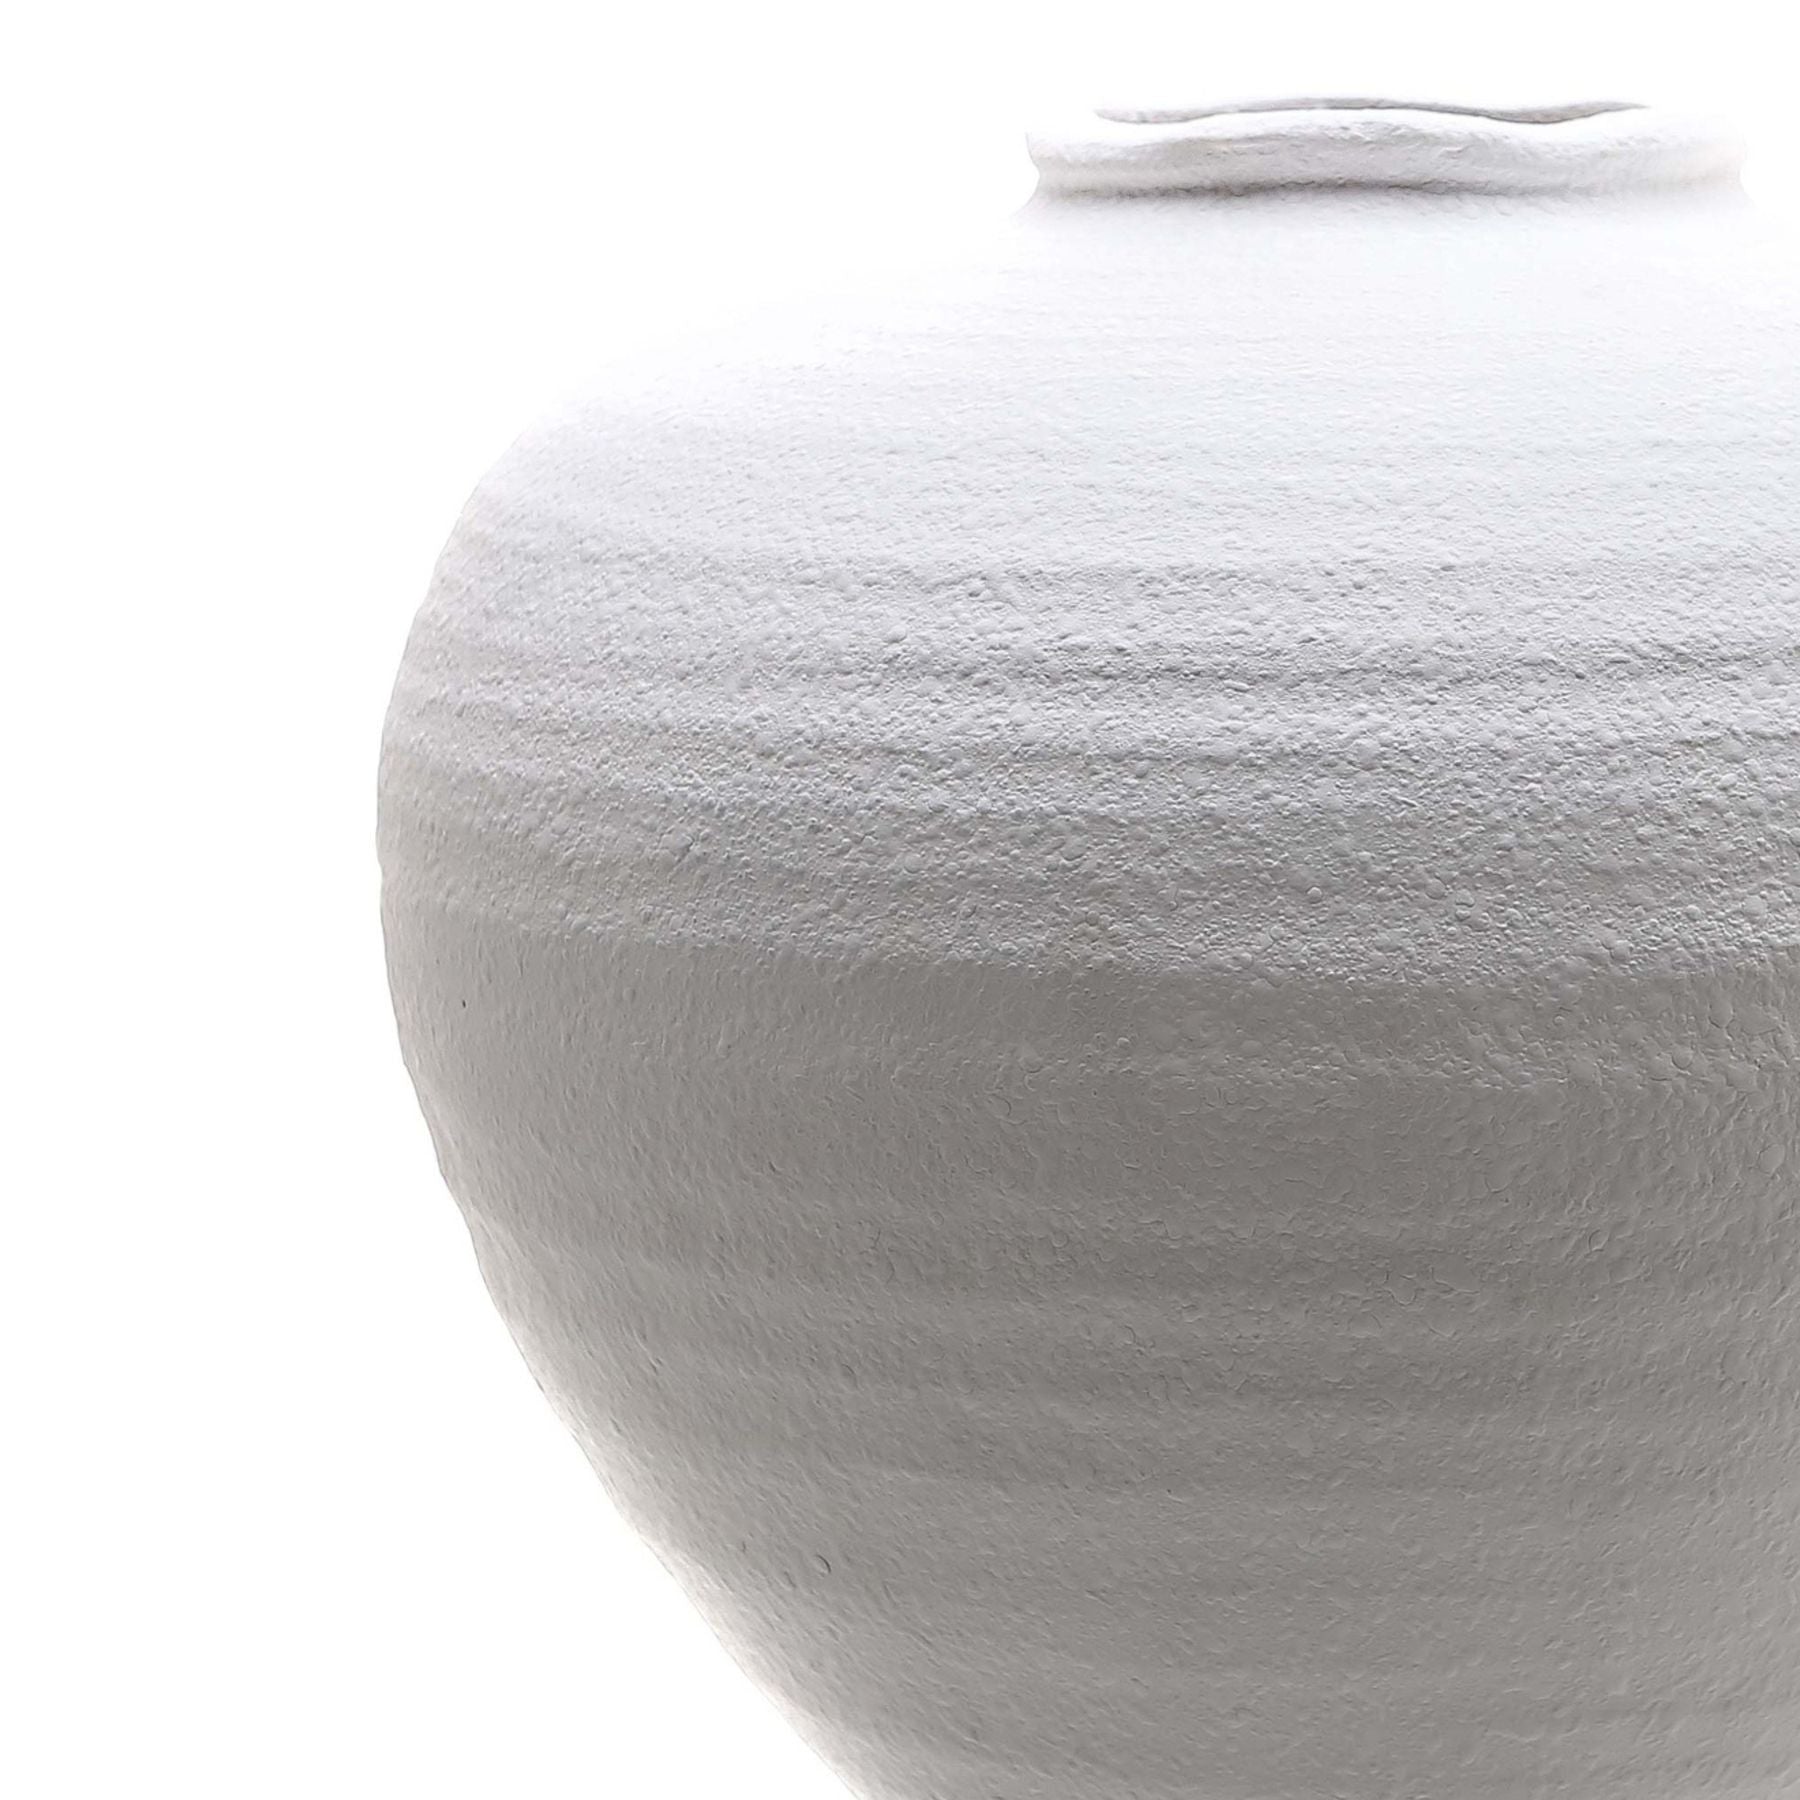 Regola Large Matt White Ceramic Vase